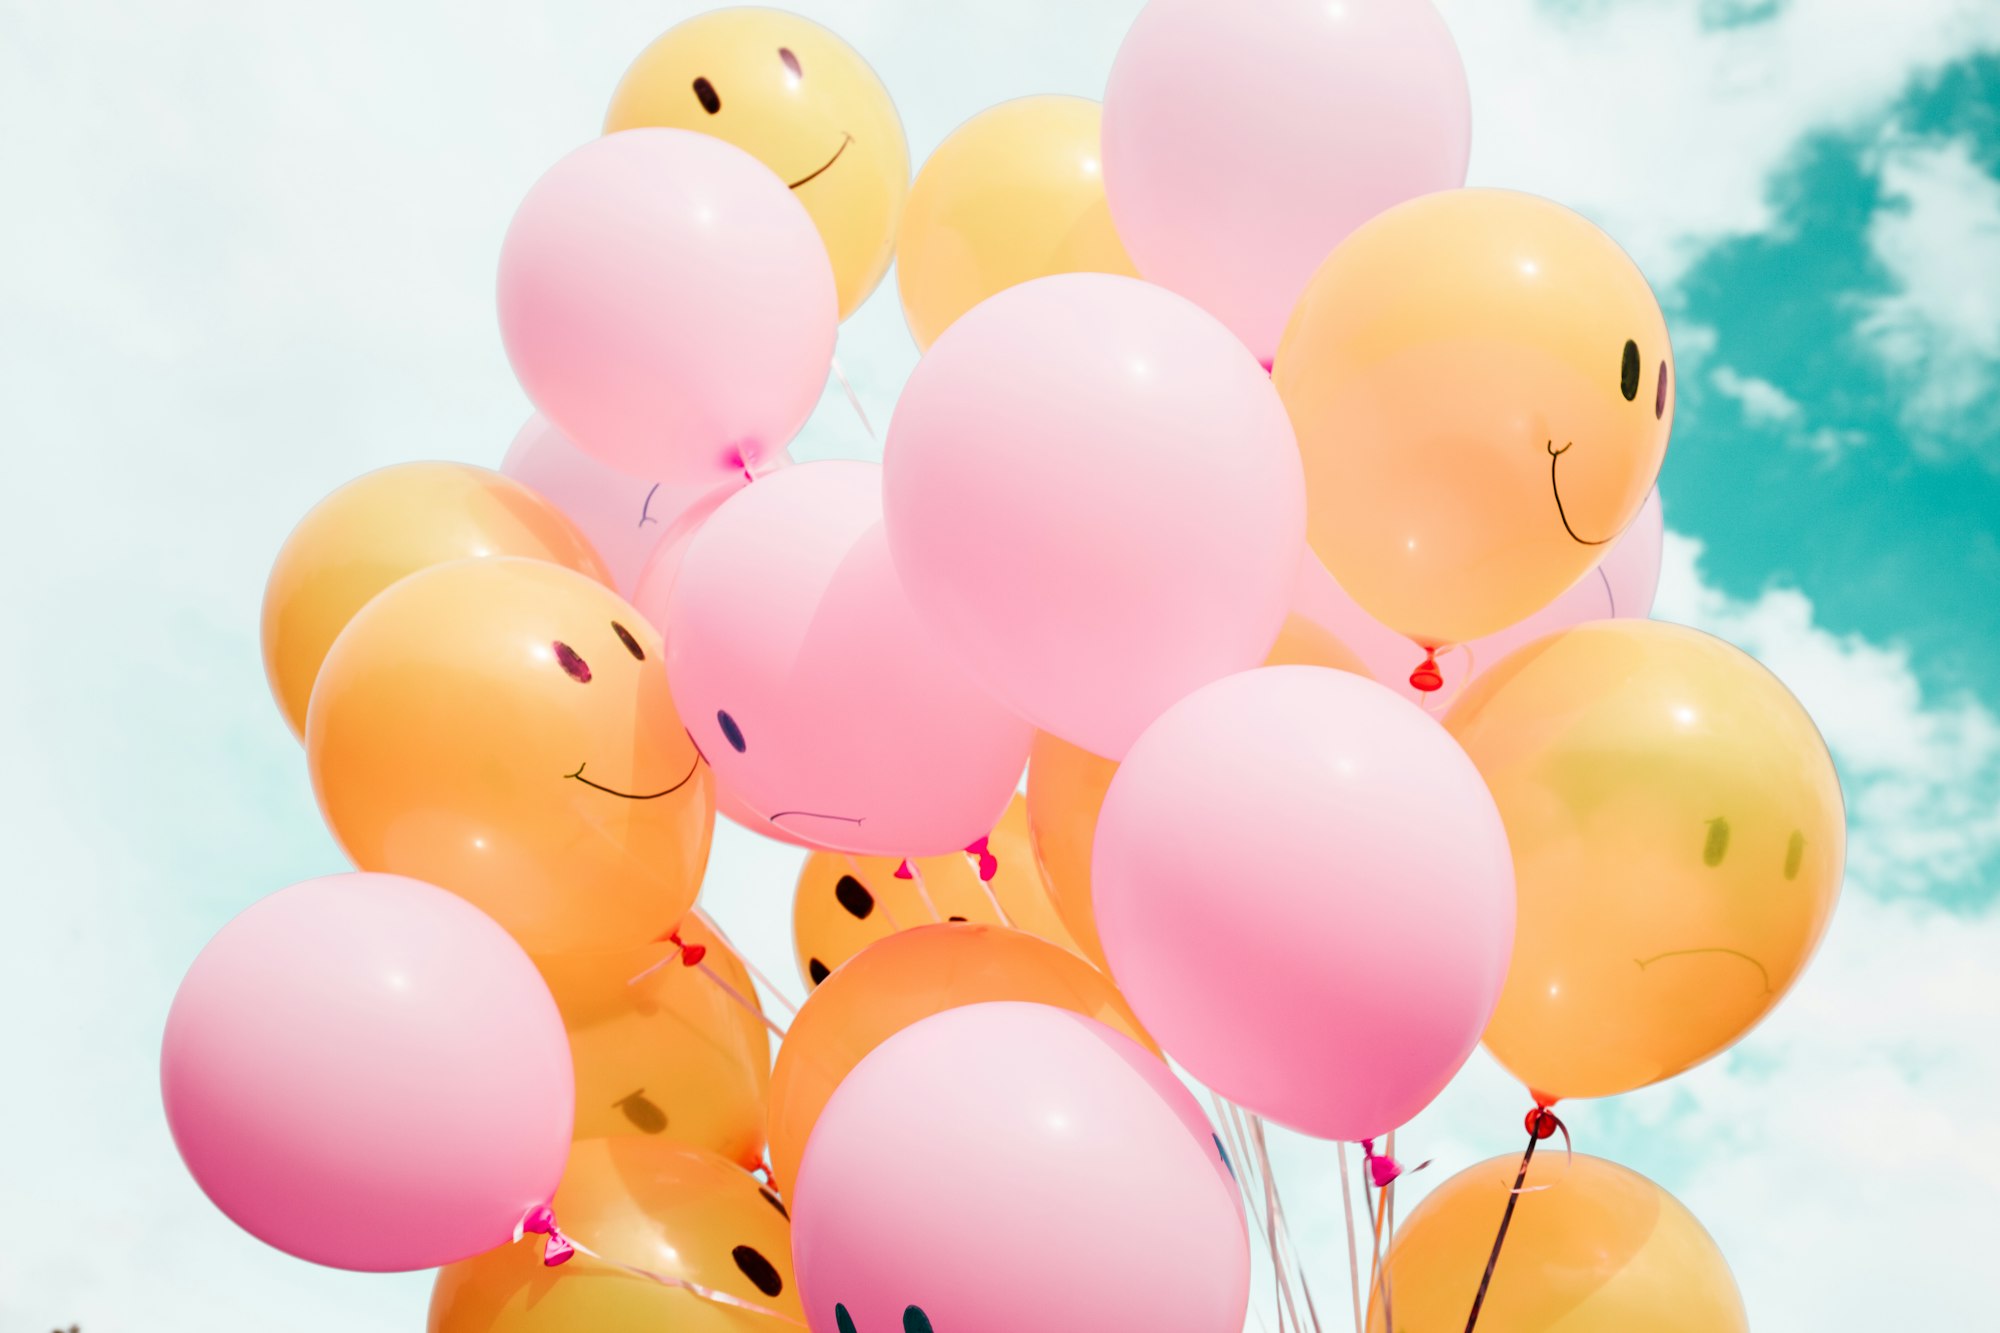 Rosa und orange Luftballons mit Gesichtern